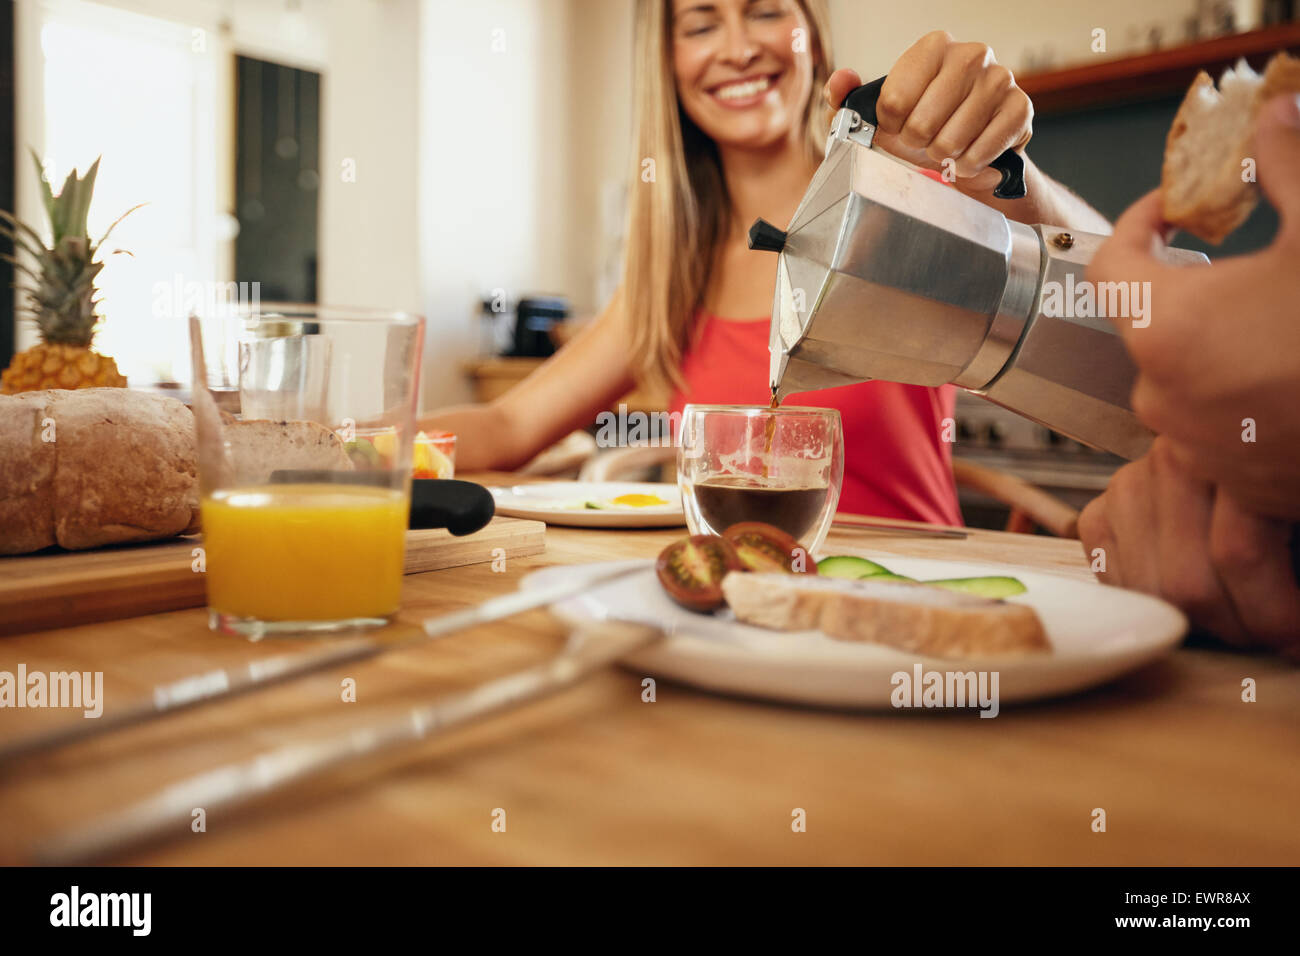 Piscine shot of woman pouring coffee dans une tasse. Woman smiling tout en servant le petit-déjeuner à l'homme dans la cuisine à la maison. Jeune couple e Banque D'Images